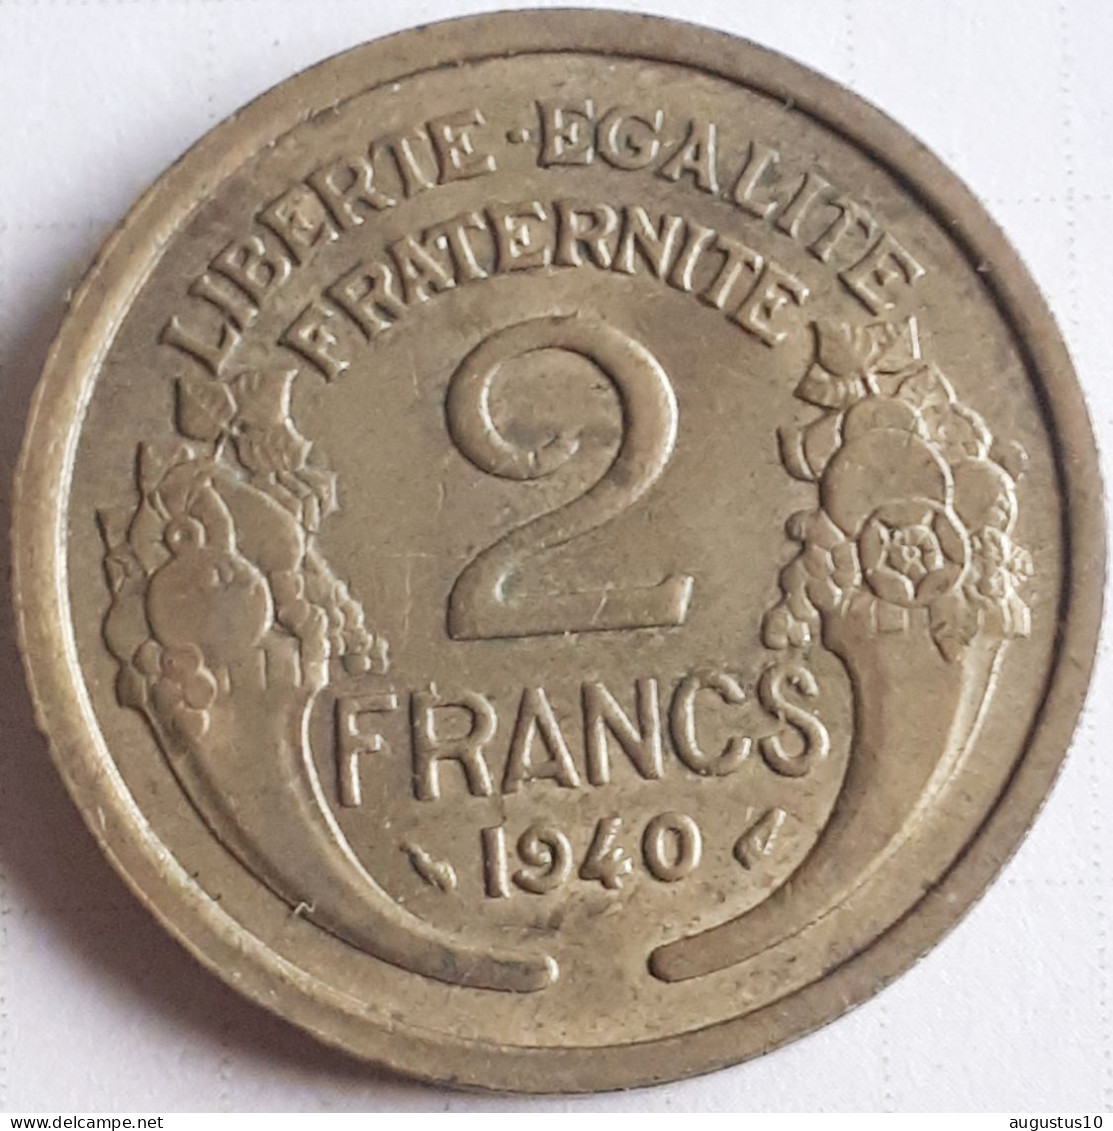 FRANCE ;RARE 2 FRANCS 1940 KM 886 MORLON SUPERBE ! - 2 Francs